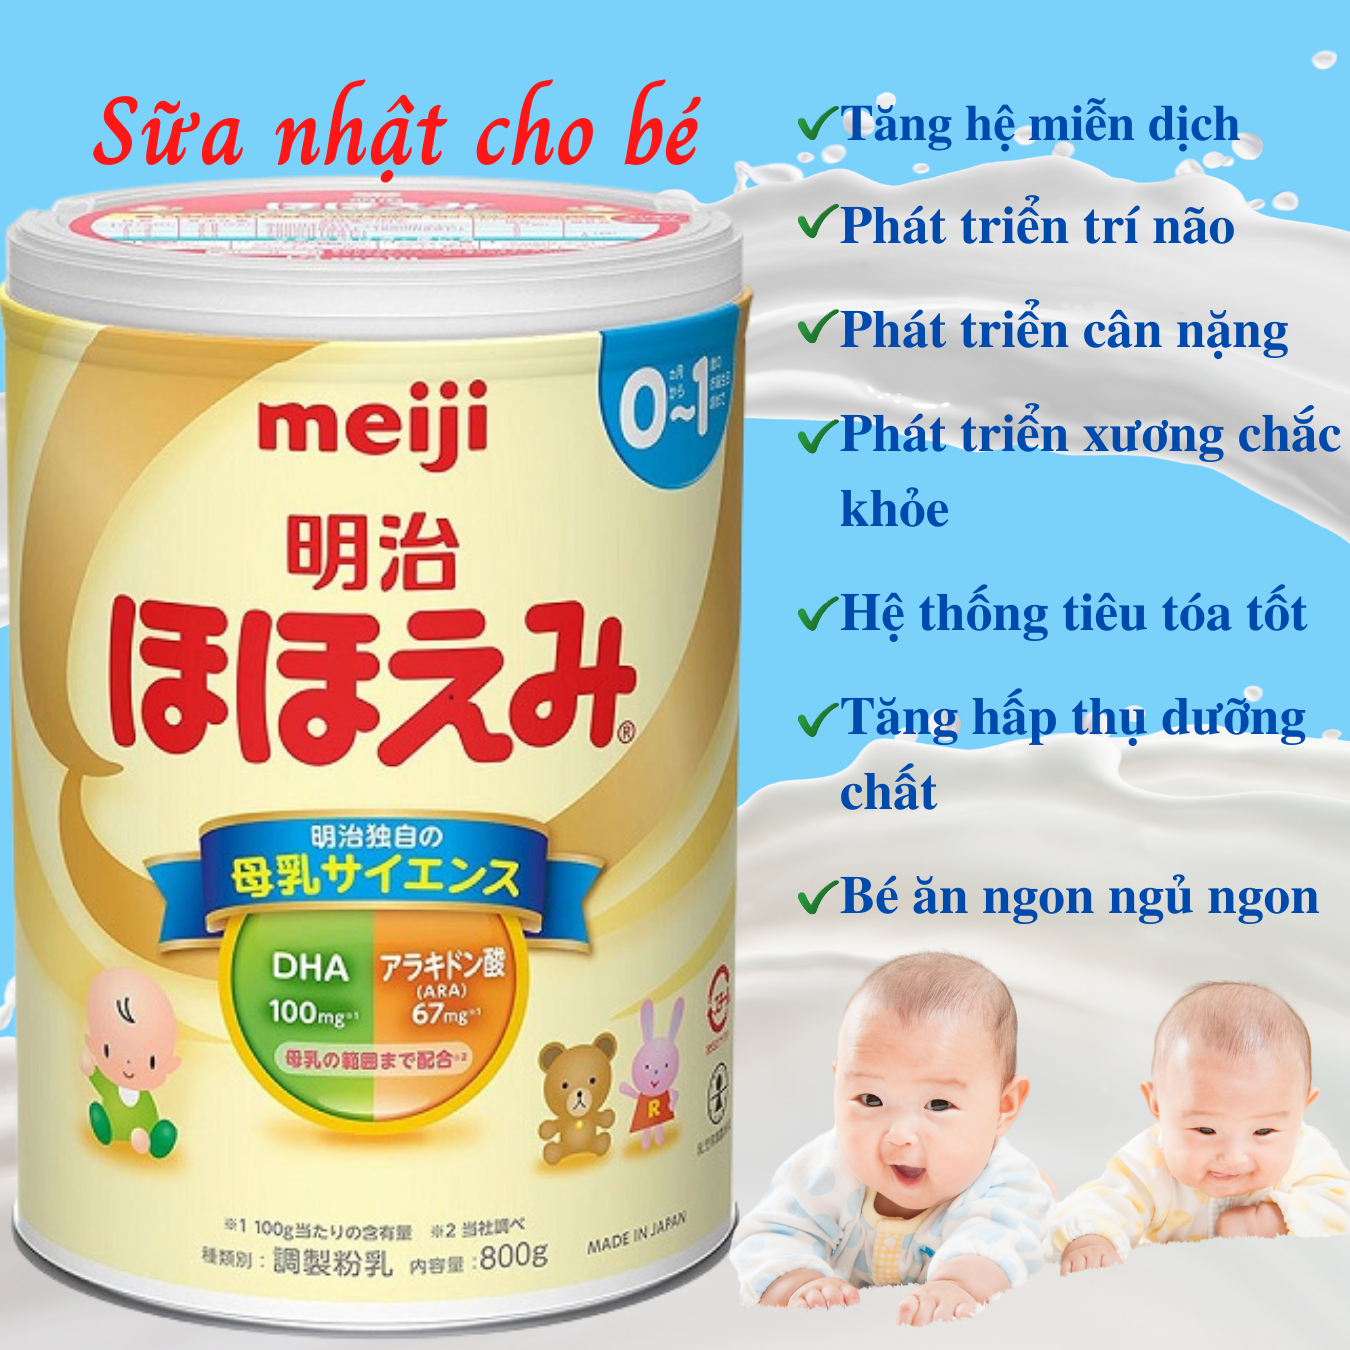 Top 6 loại sữa tốt nhất cho trẻ sơ sinh từ 06 tháng tuổi của Nhật Bản